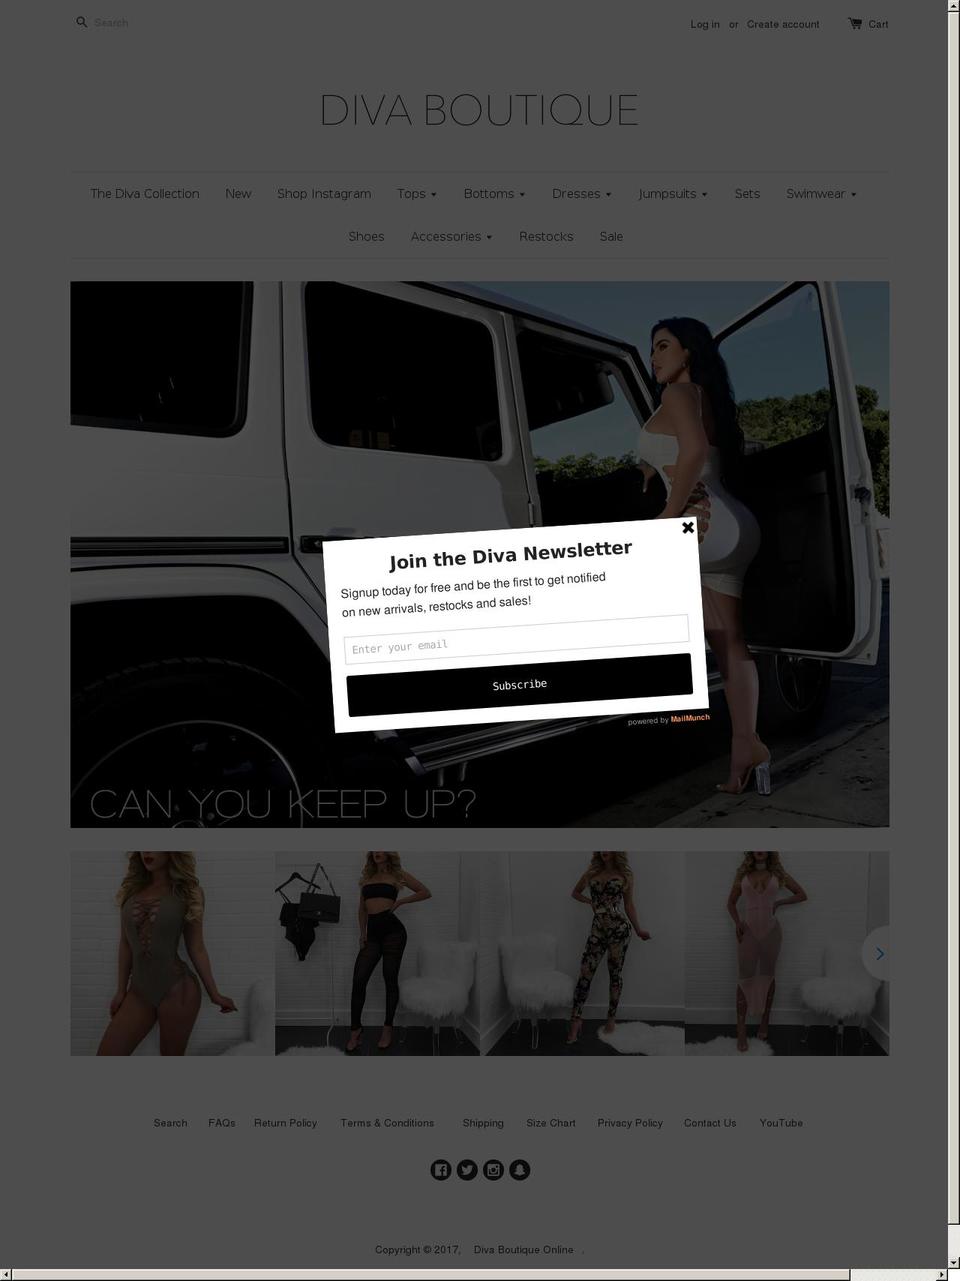 Fashionopolism Shopify theme site example divaboutiqueonline.com